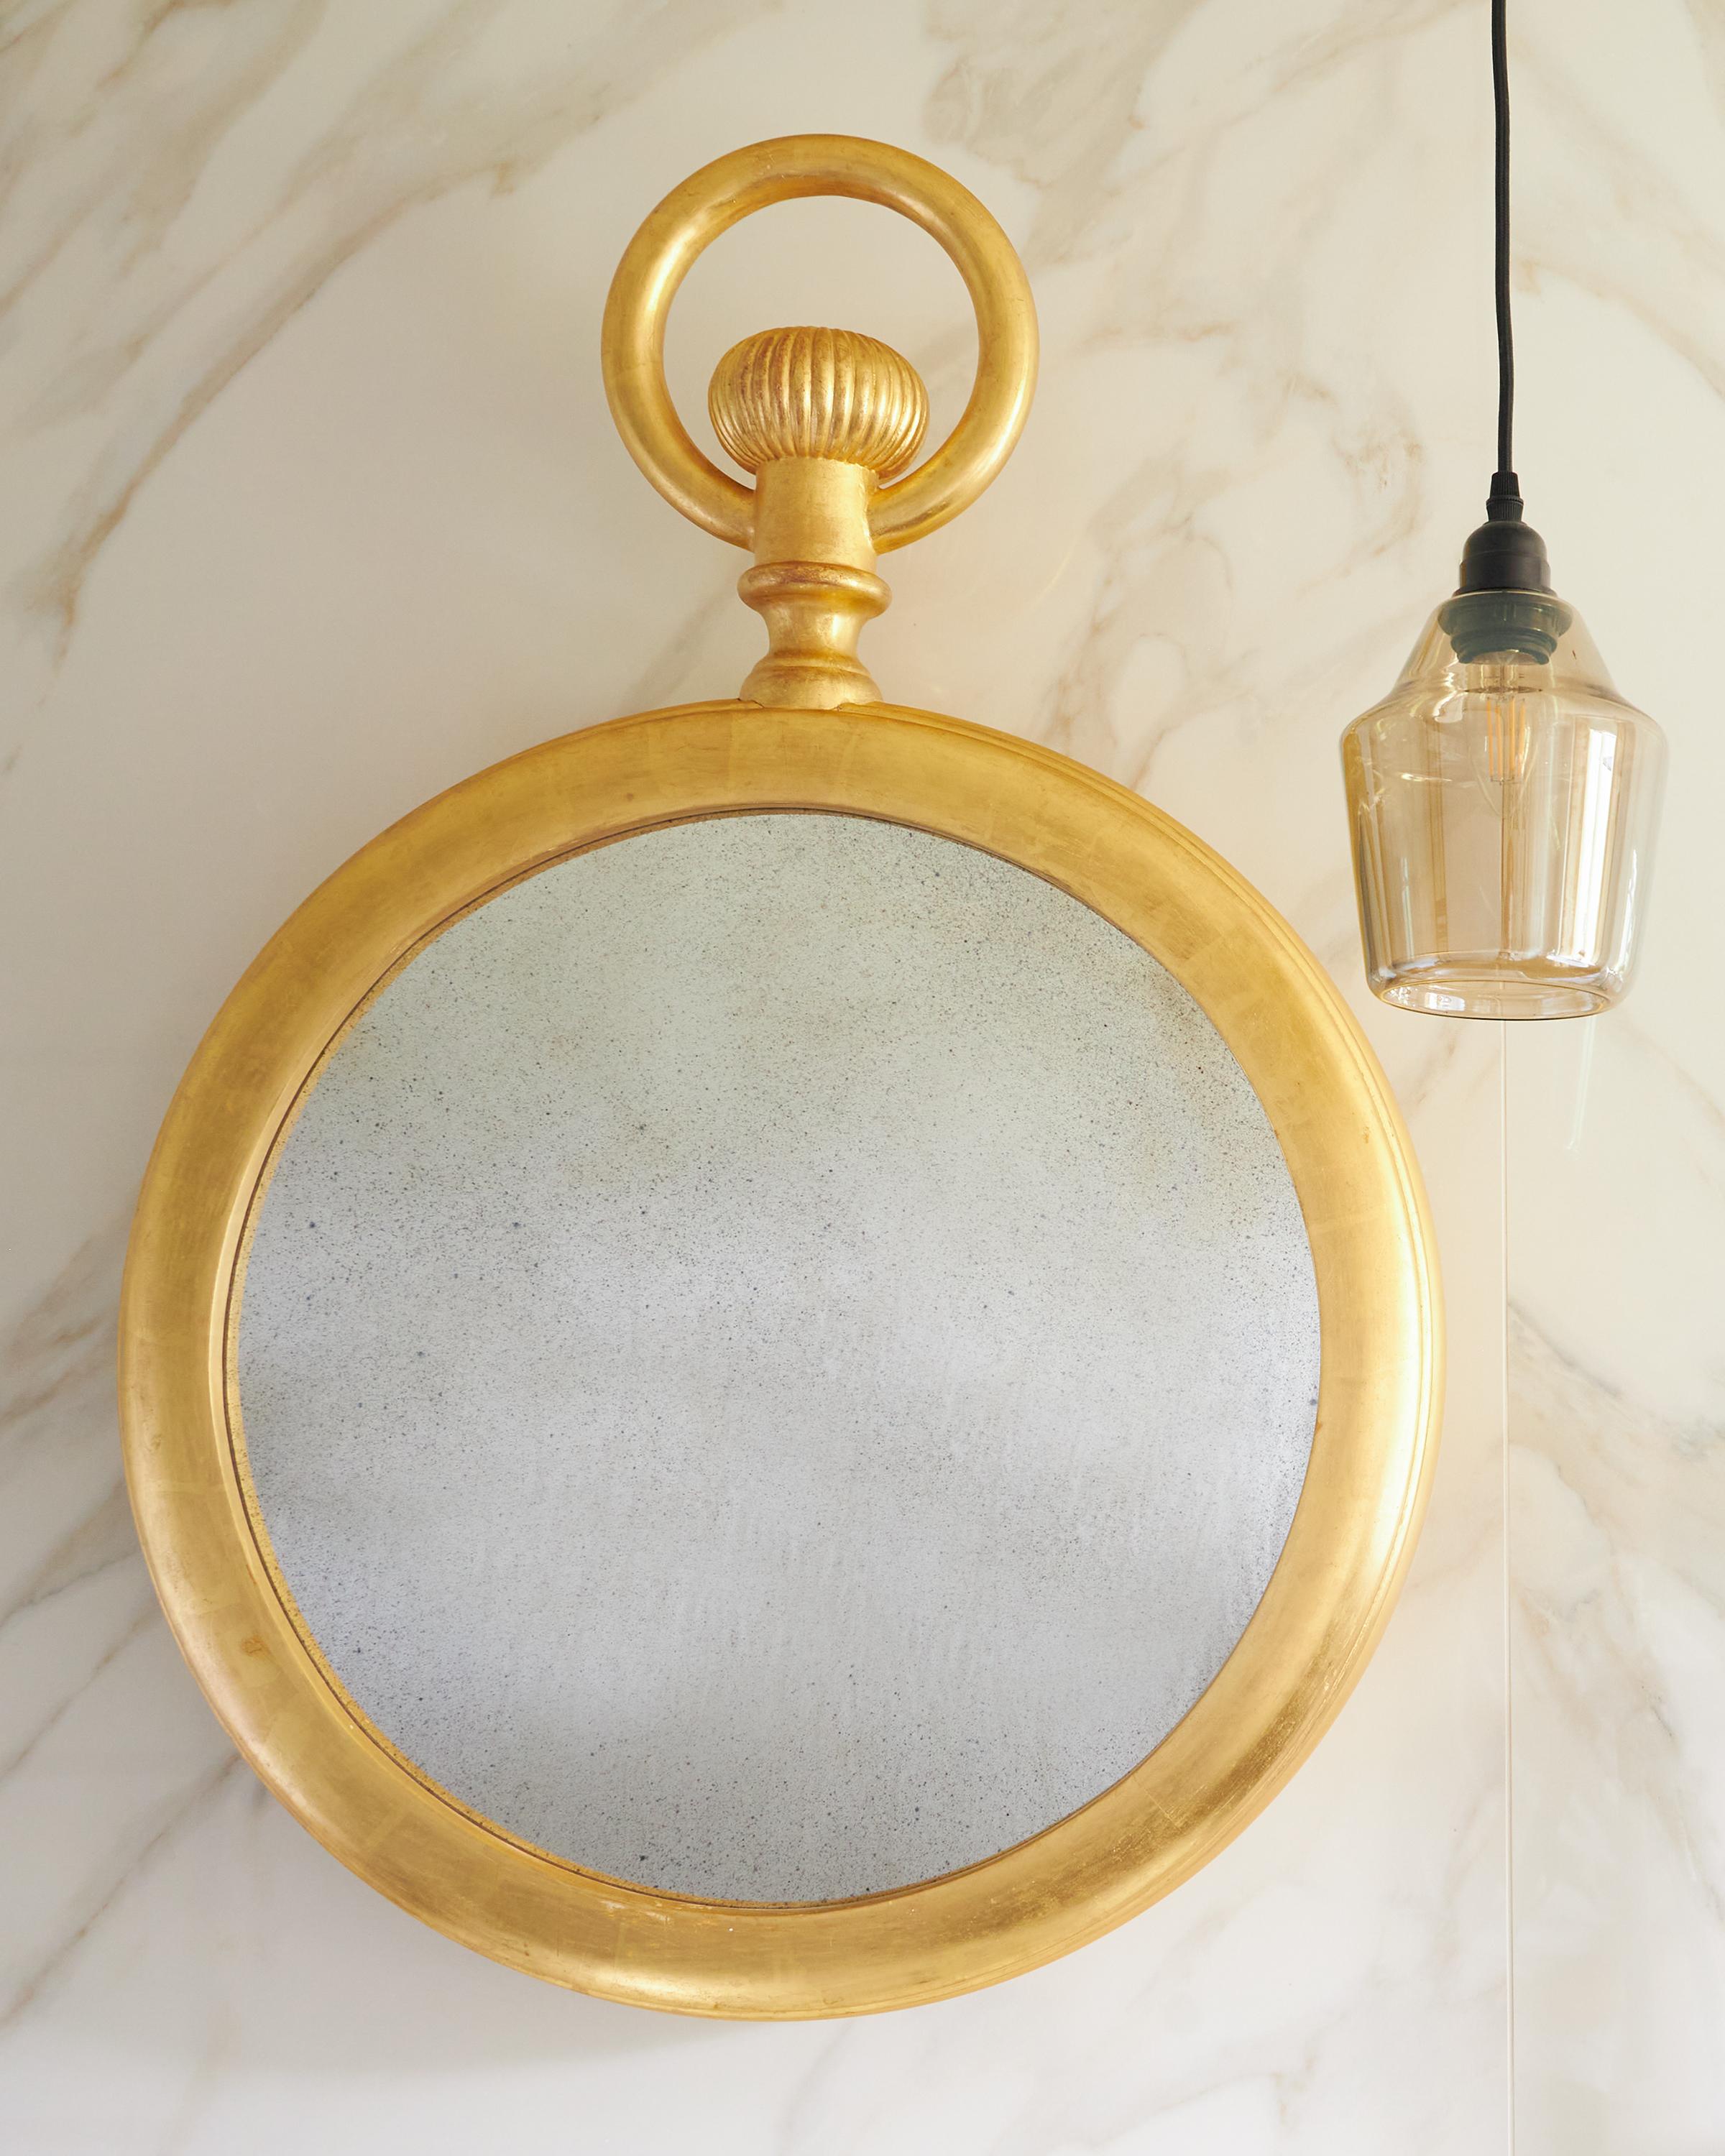 Ein feiner konvexer Spiegel aus vergoldetem Holz im Taschenuhrendesign mit Landhausproportionen in der Art von Piero Fornasetti. Geschnitzte Details, darunter der markante obere Ring der Uhr und das gedrehte Zifferblatt. Dieser große